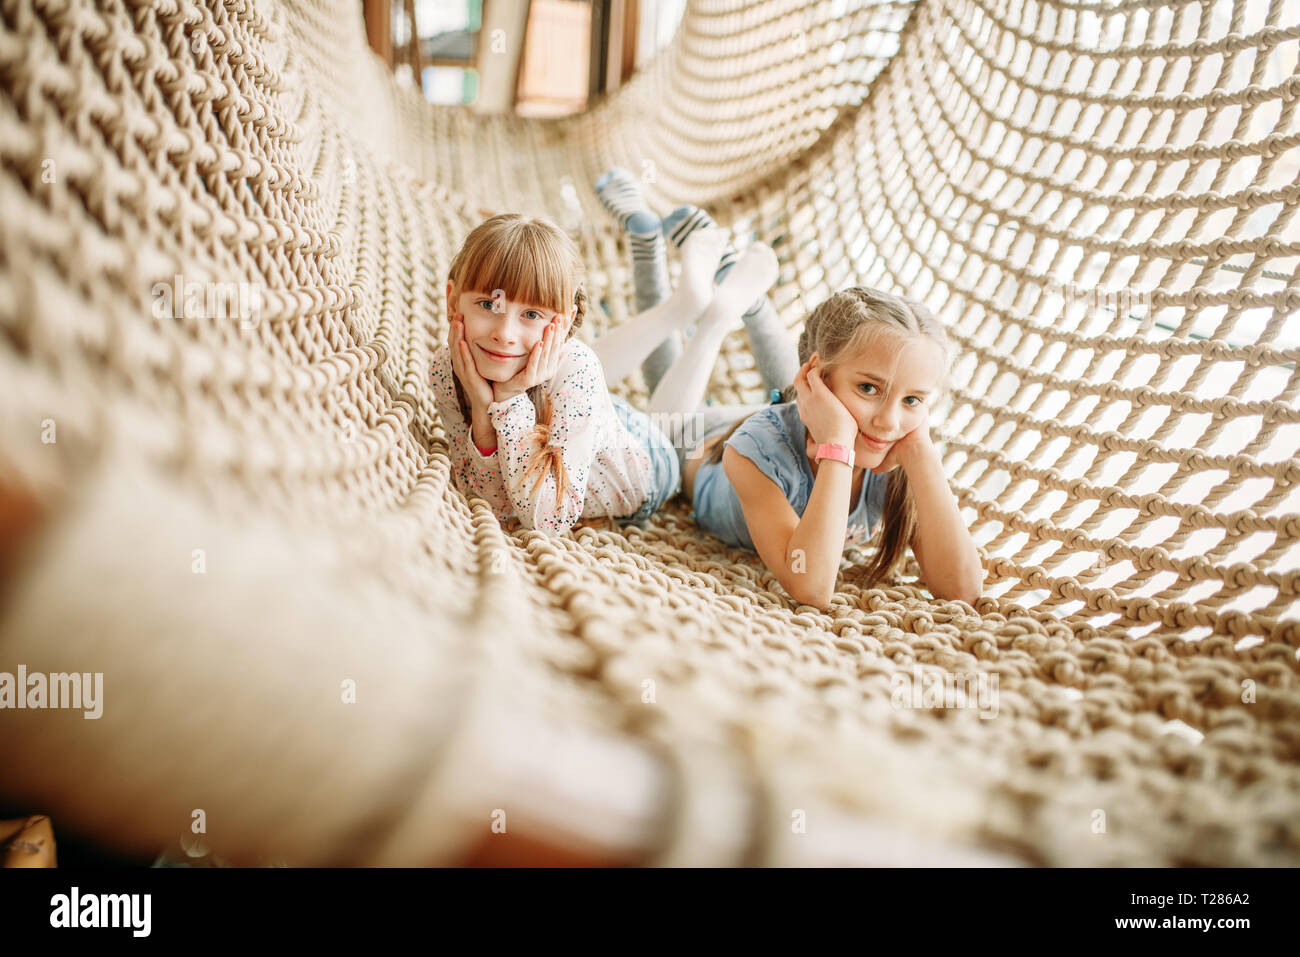 Deux funny girls pose à la corde chez les enfants net game center. Childs excités s'amuser sur l'aire de l'intérieur. Les enfants jouant dans une salle de jeux Banque D'Images